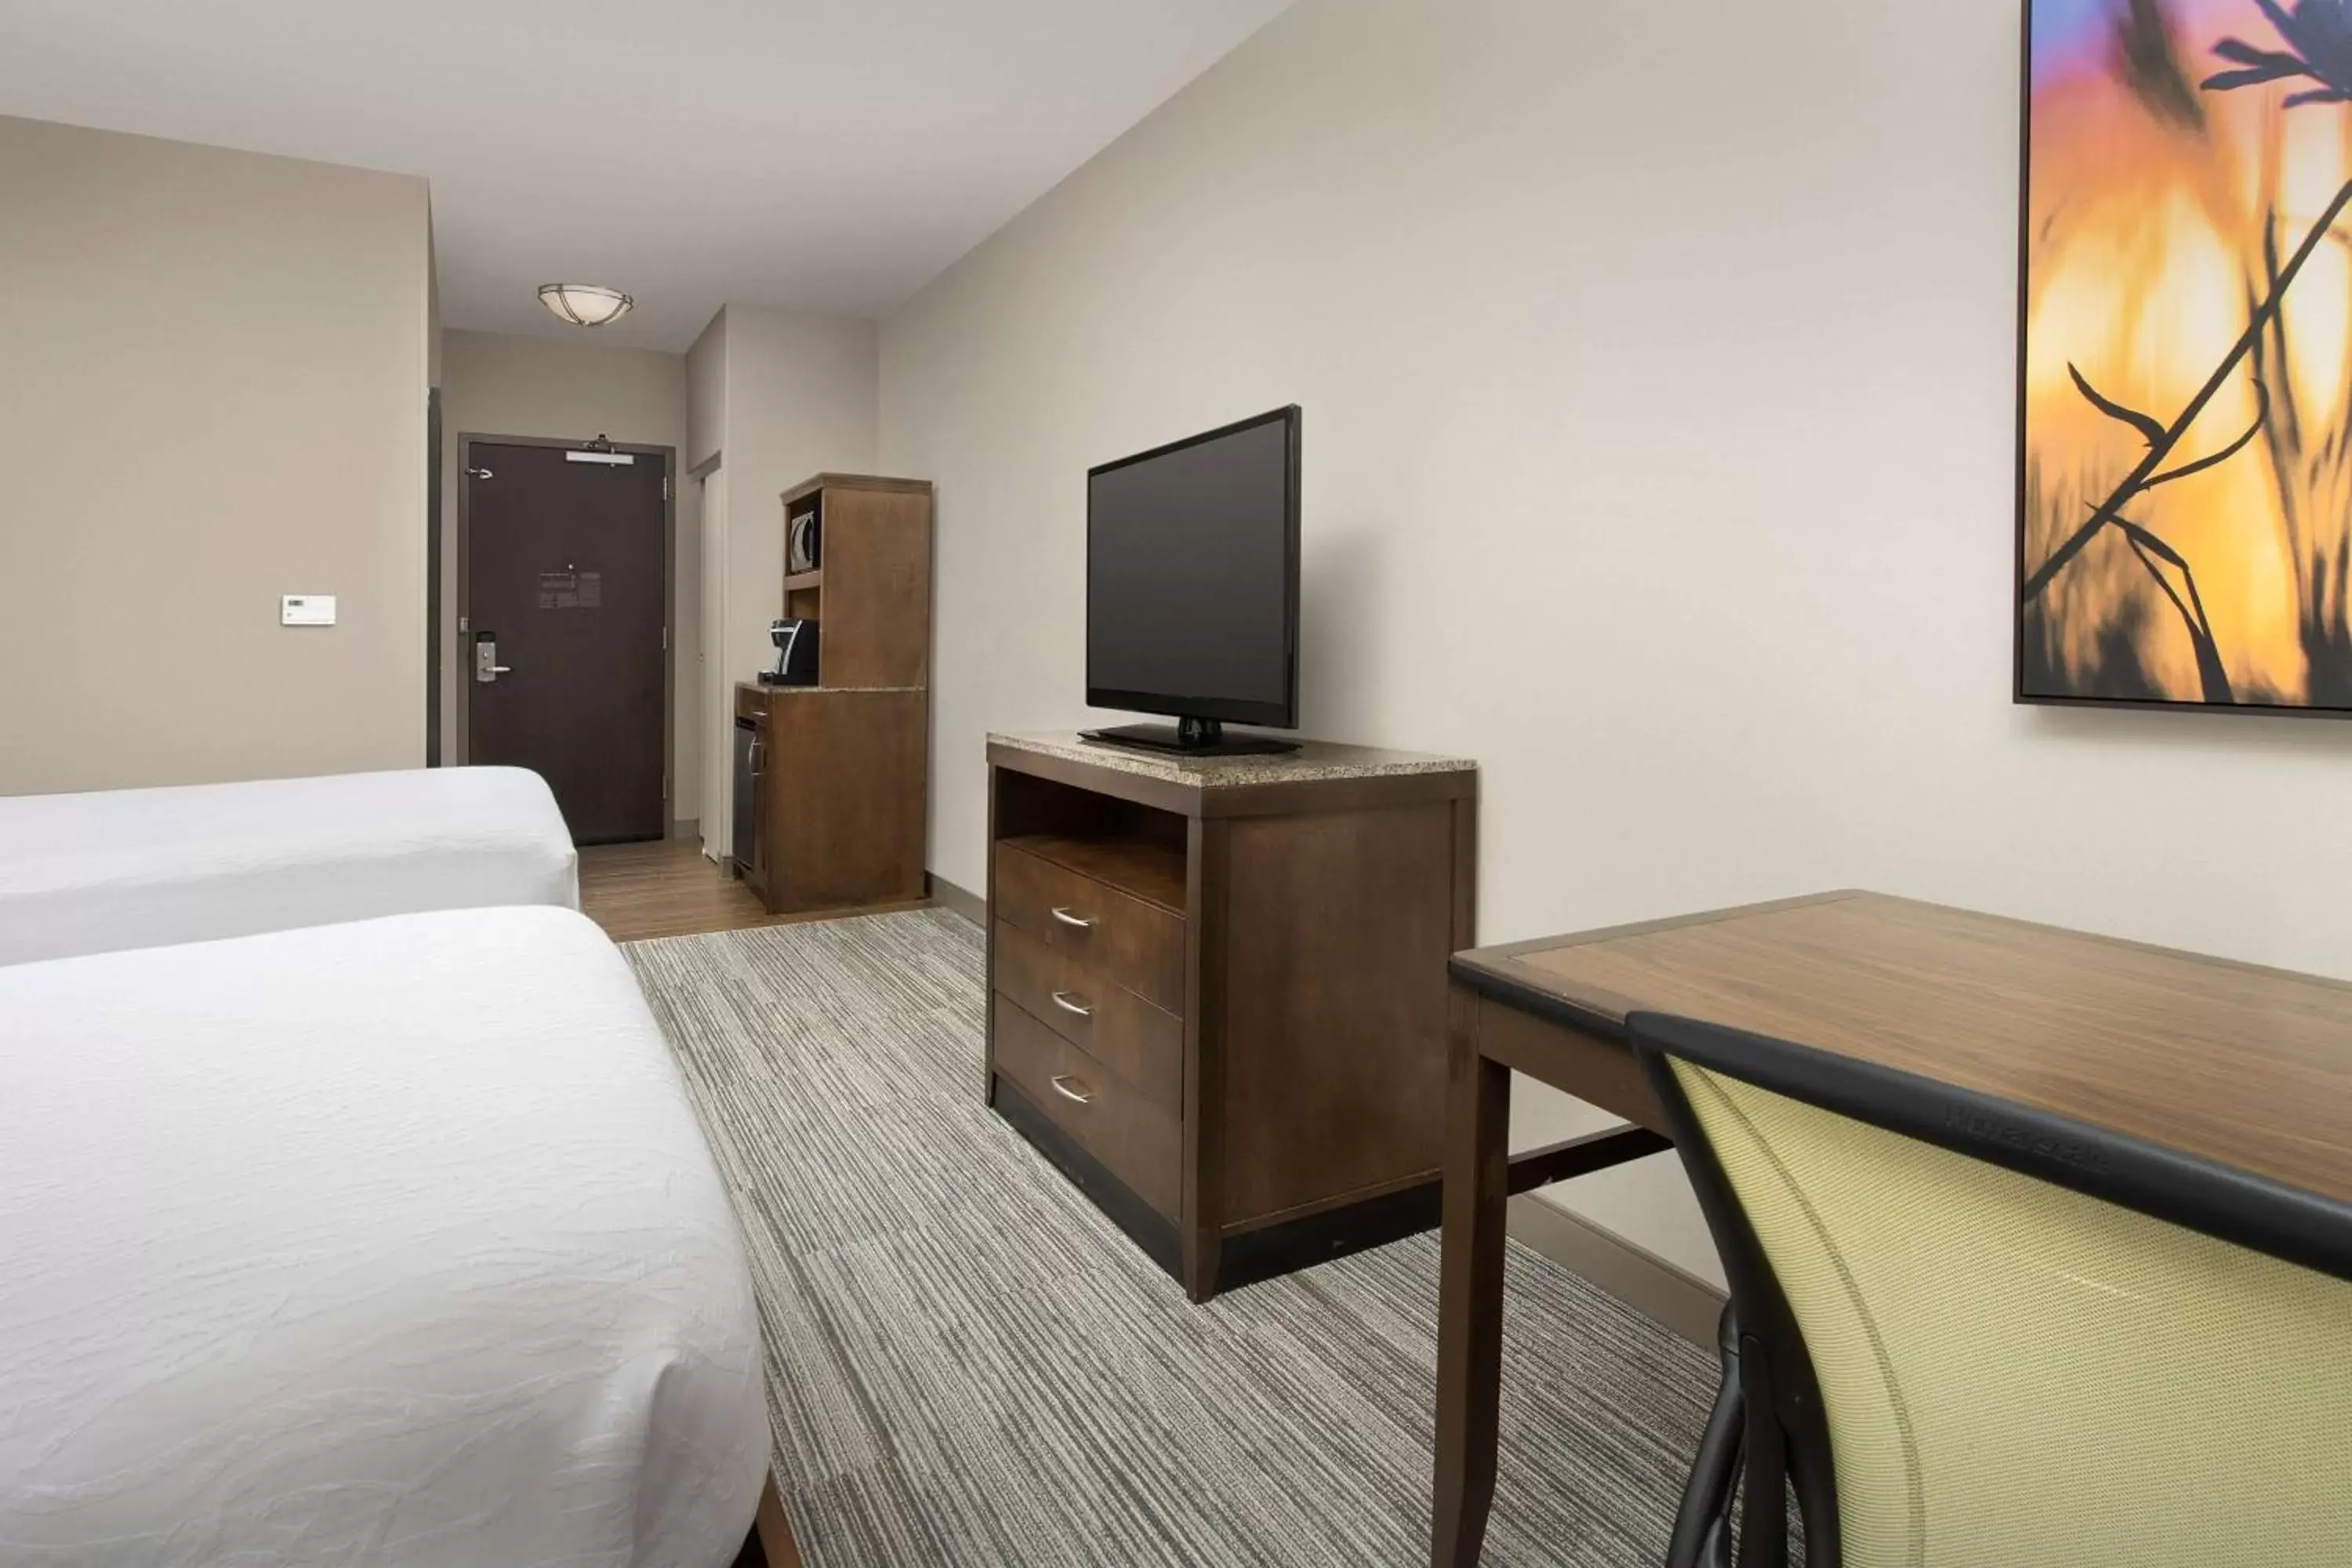 Bedroom, TV/Entertainment Center in Hilton Garden Inn Charlotte Airport